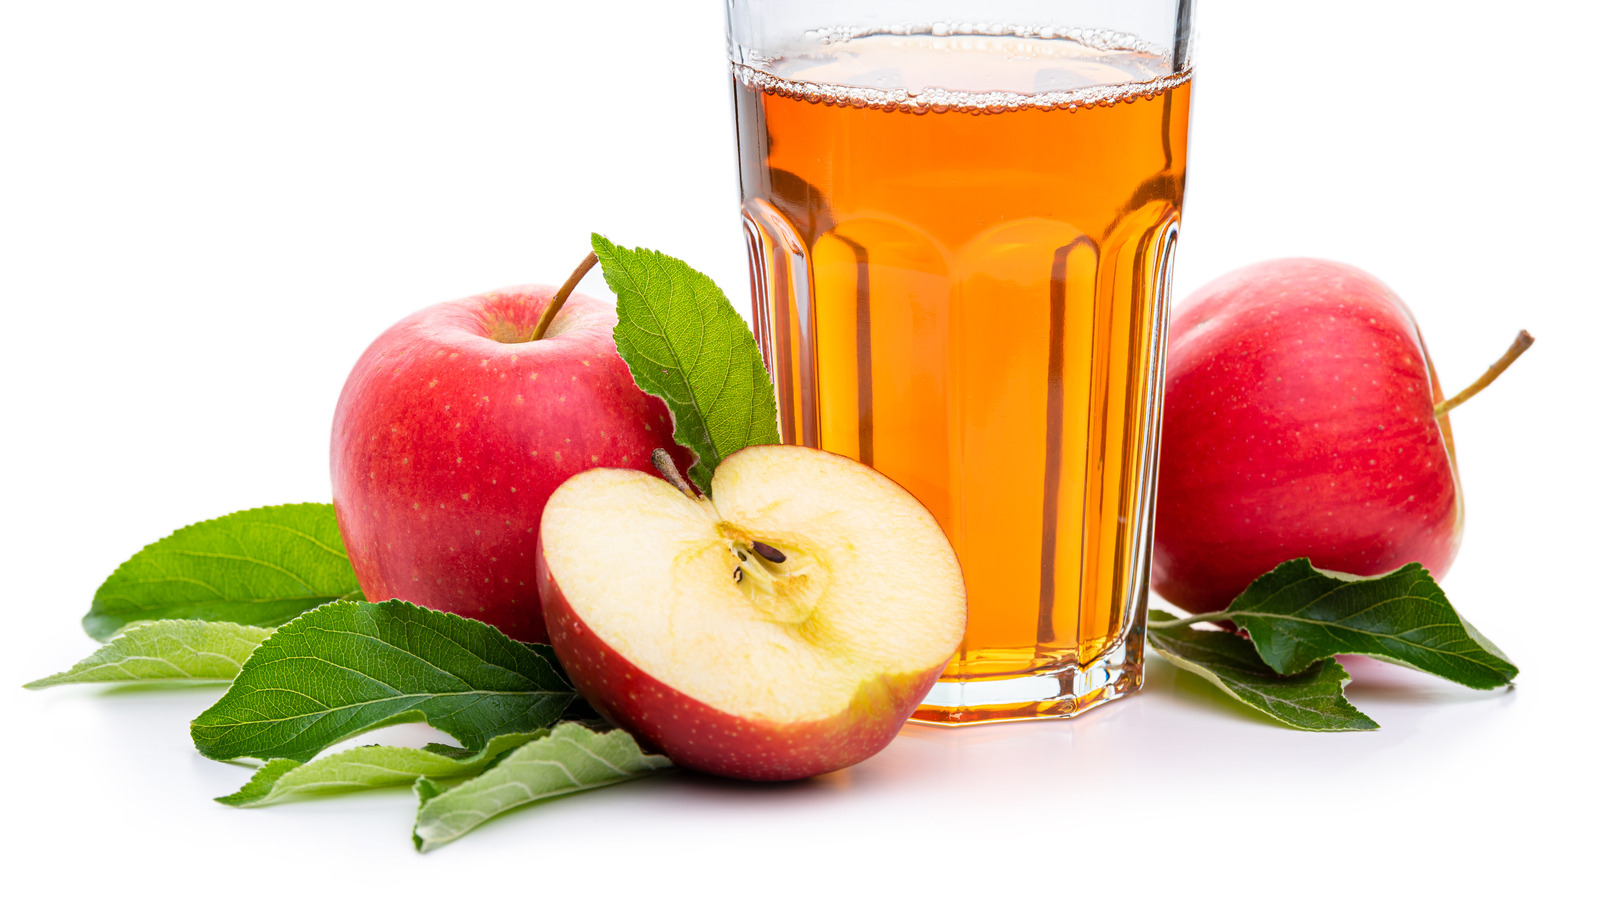 Apple Juice Brands Ranked Worst To Best